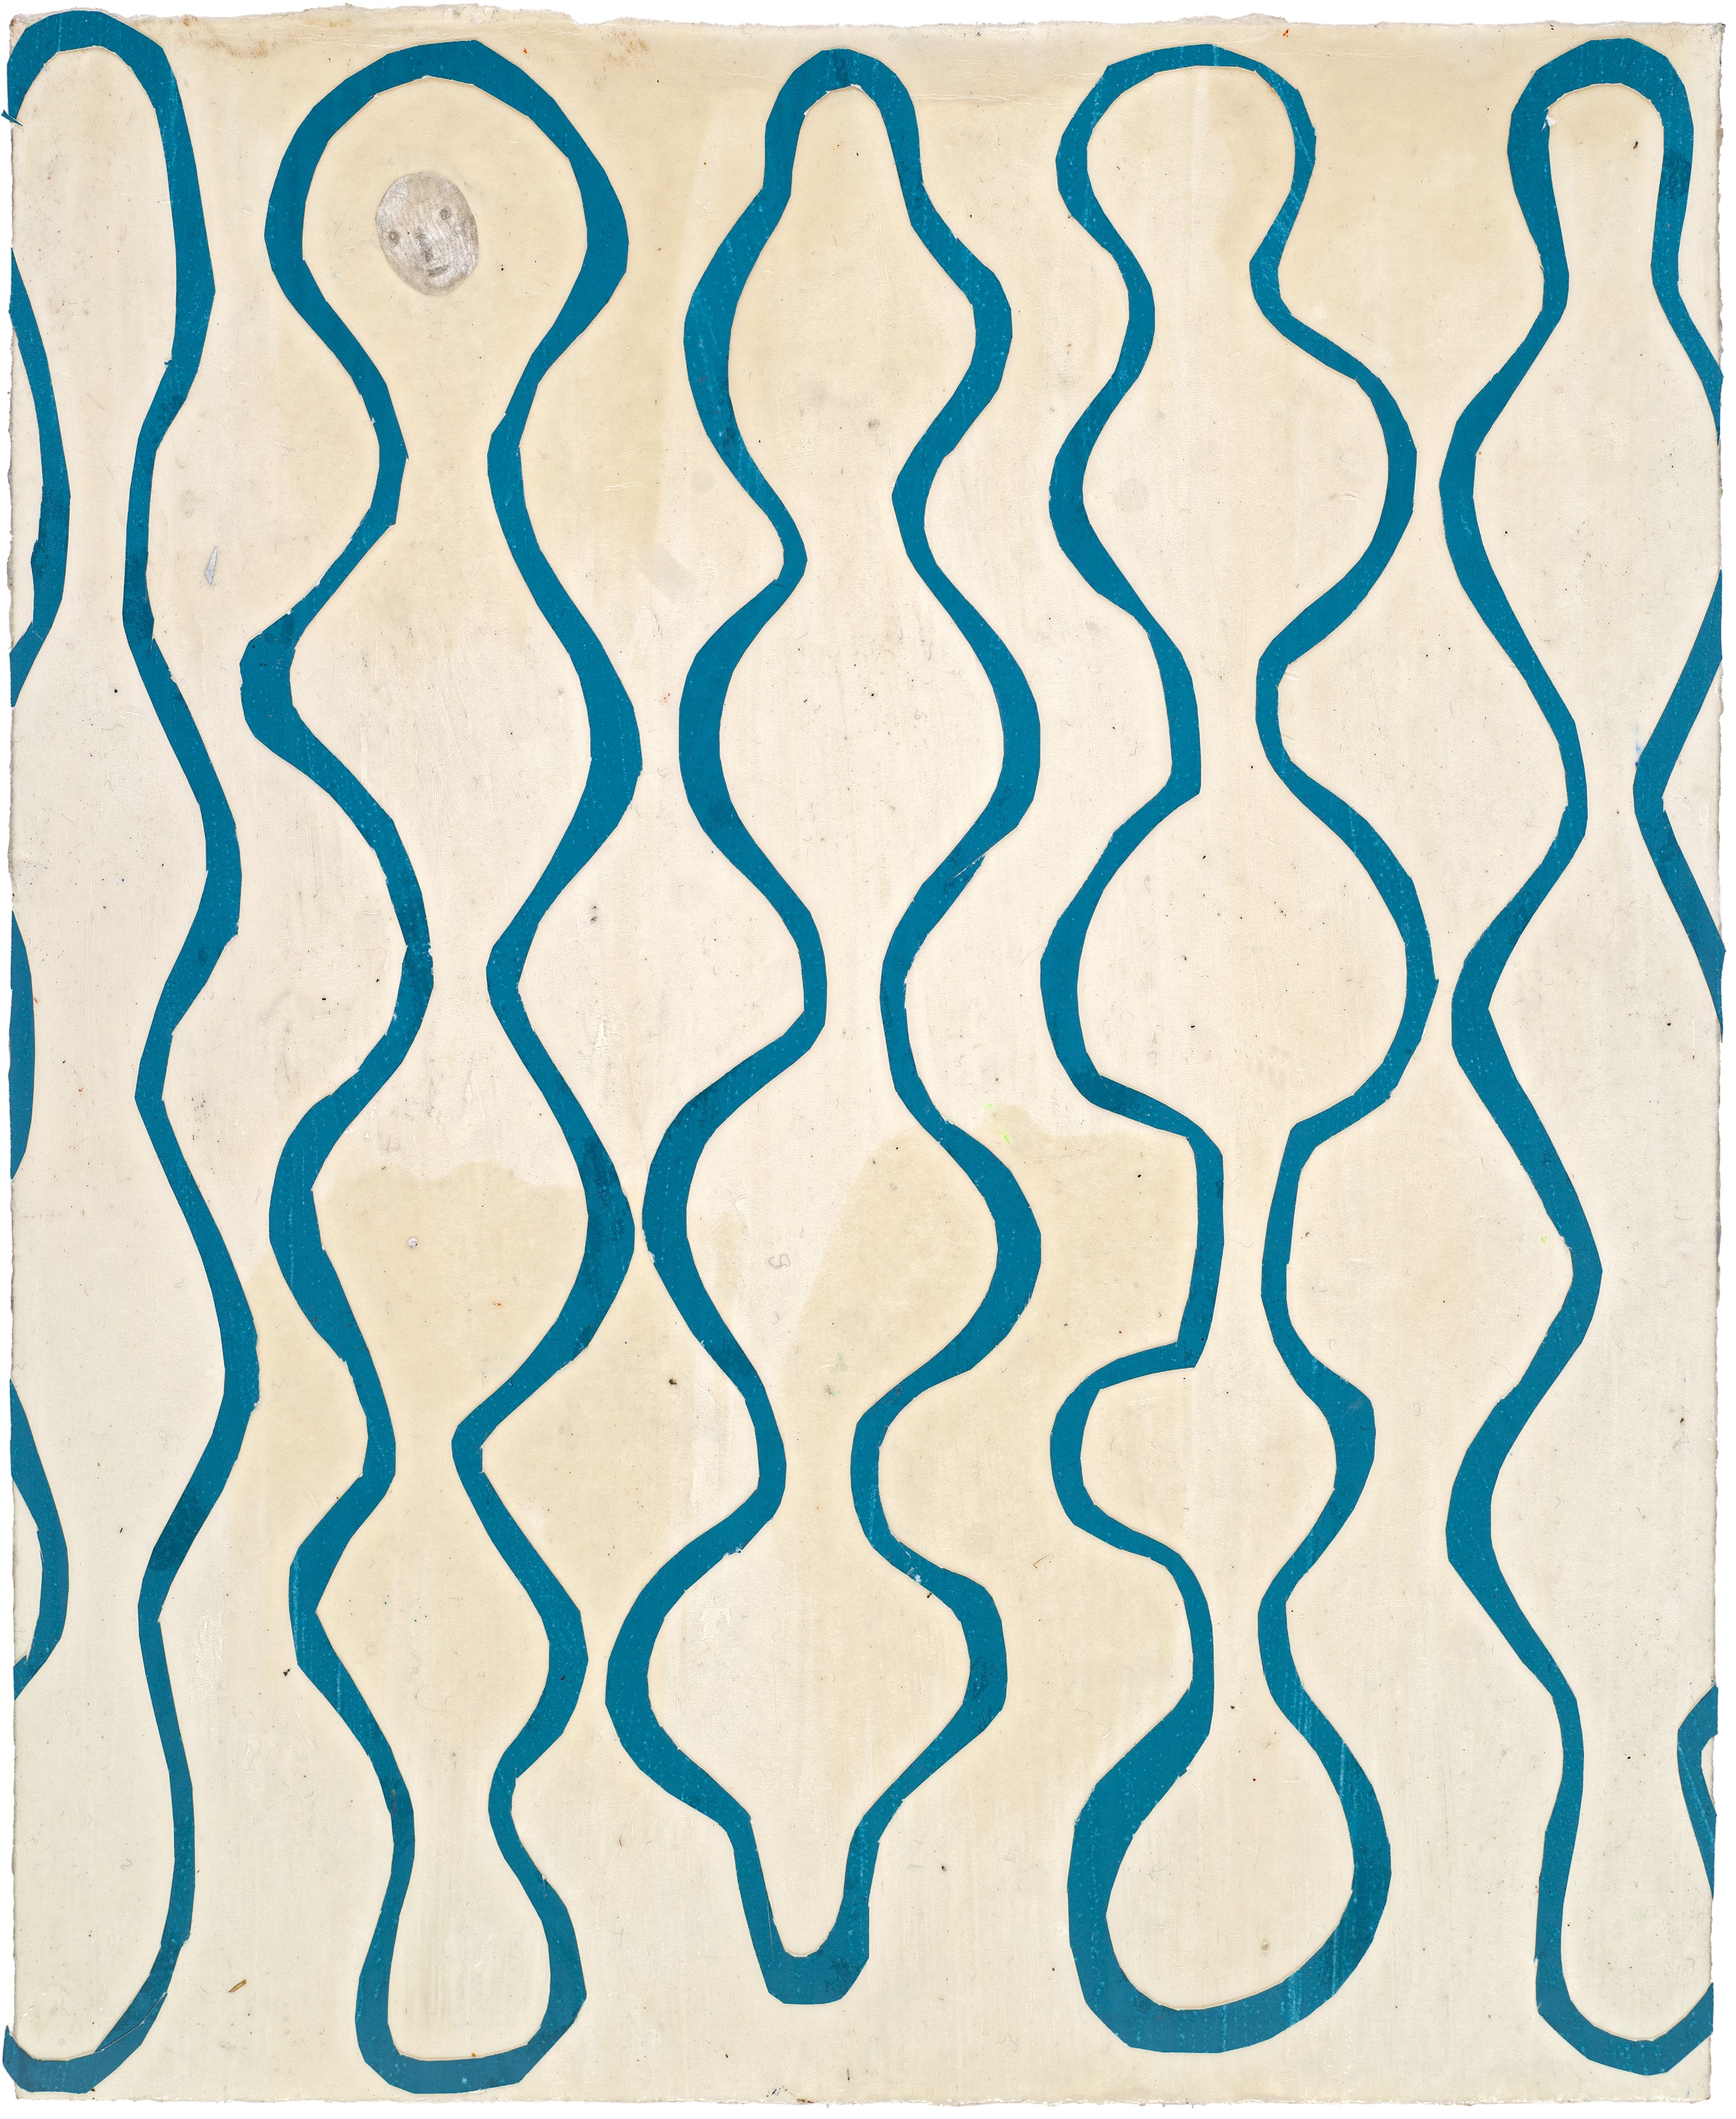 Martin Assig, Seelen #126, Gouache, wax, paper, 30,5x25 cm, 2020